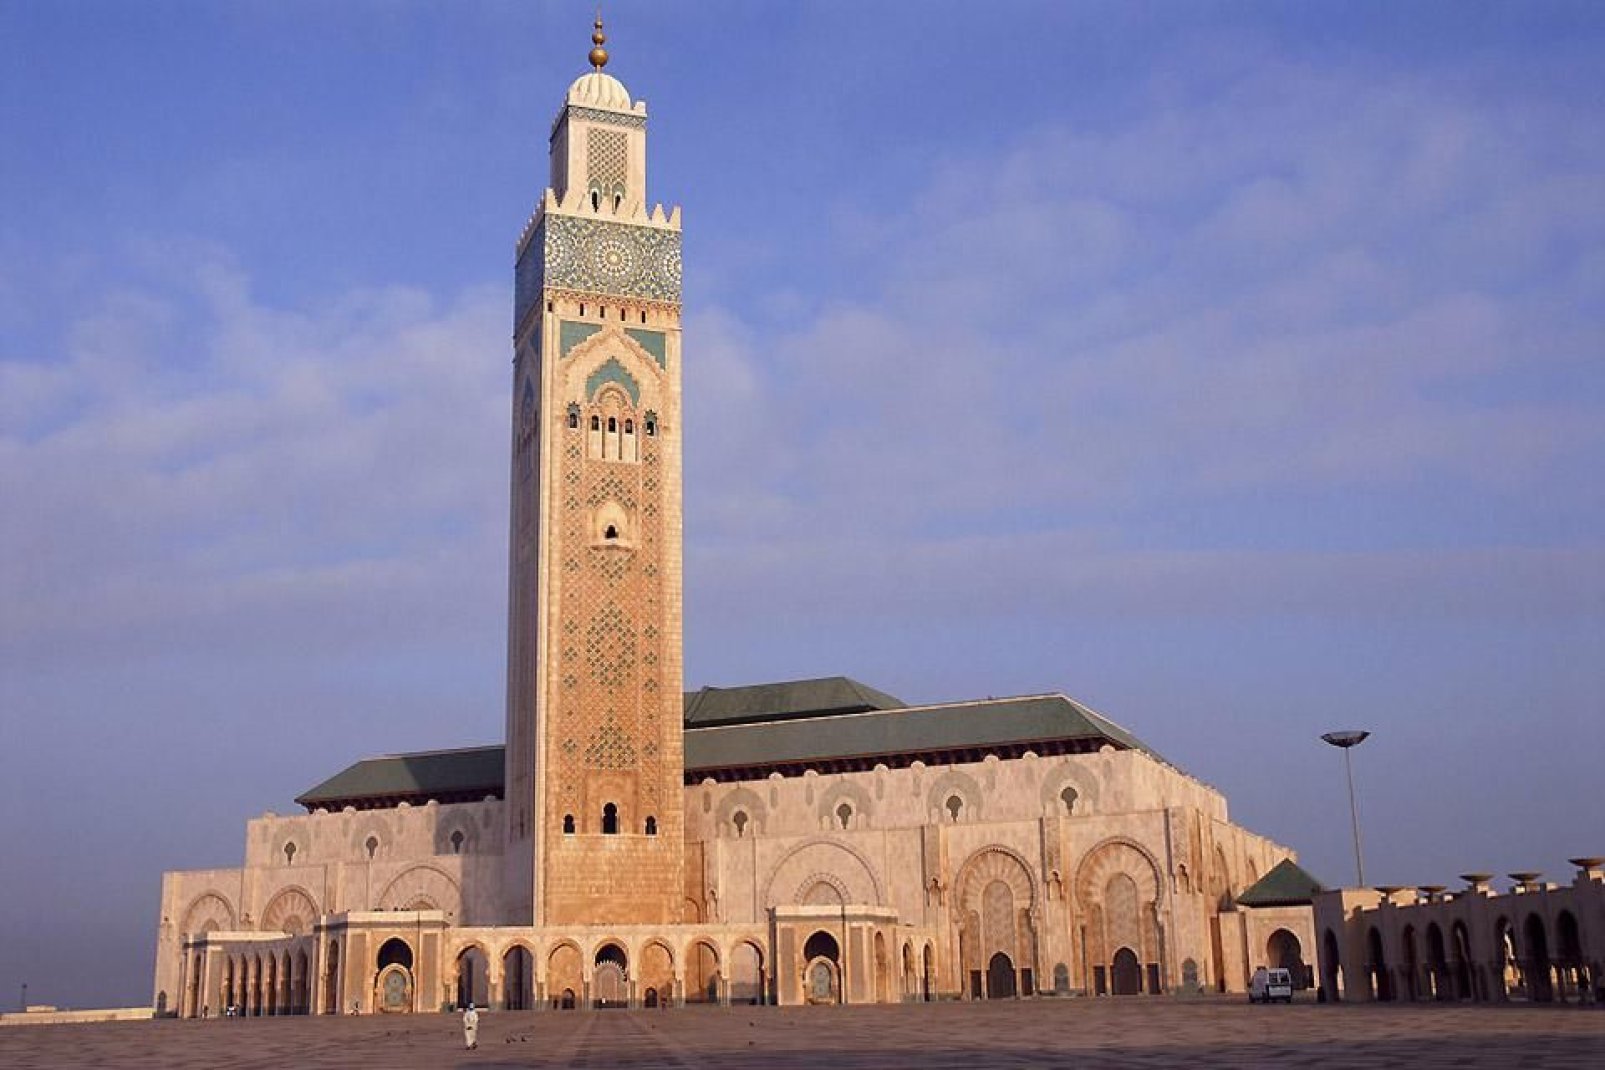 La mezquita de Hassan II, la más grande de Marruecos y la quinta más grande del mundo, se erige sobre el mar.